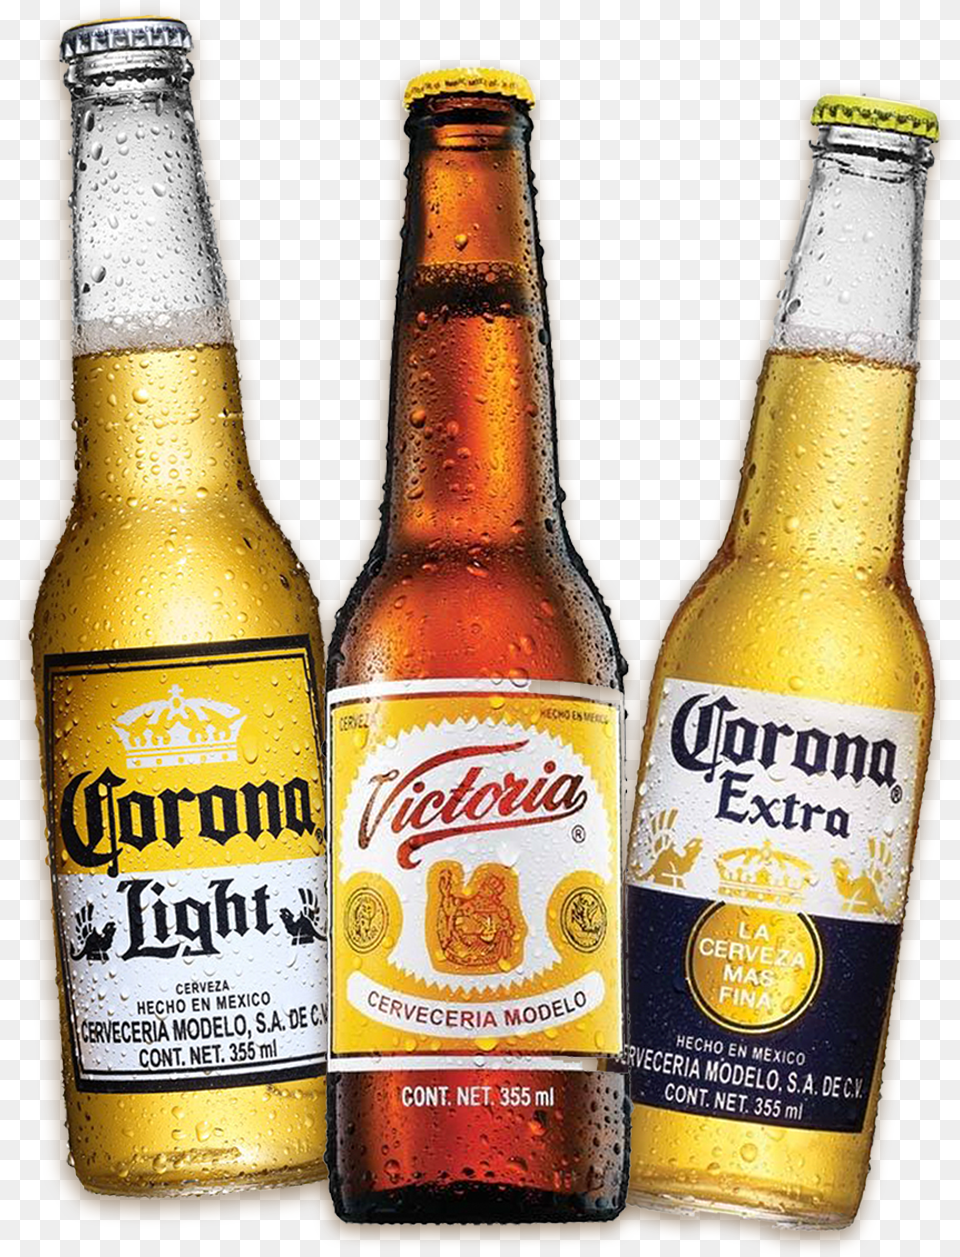 Corona Extra Light Cervezas, Alcohol, Beer, Beer Bottle, Beverage Png Image